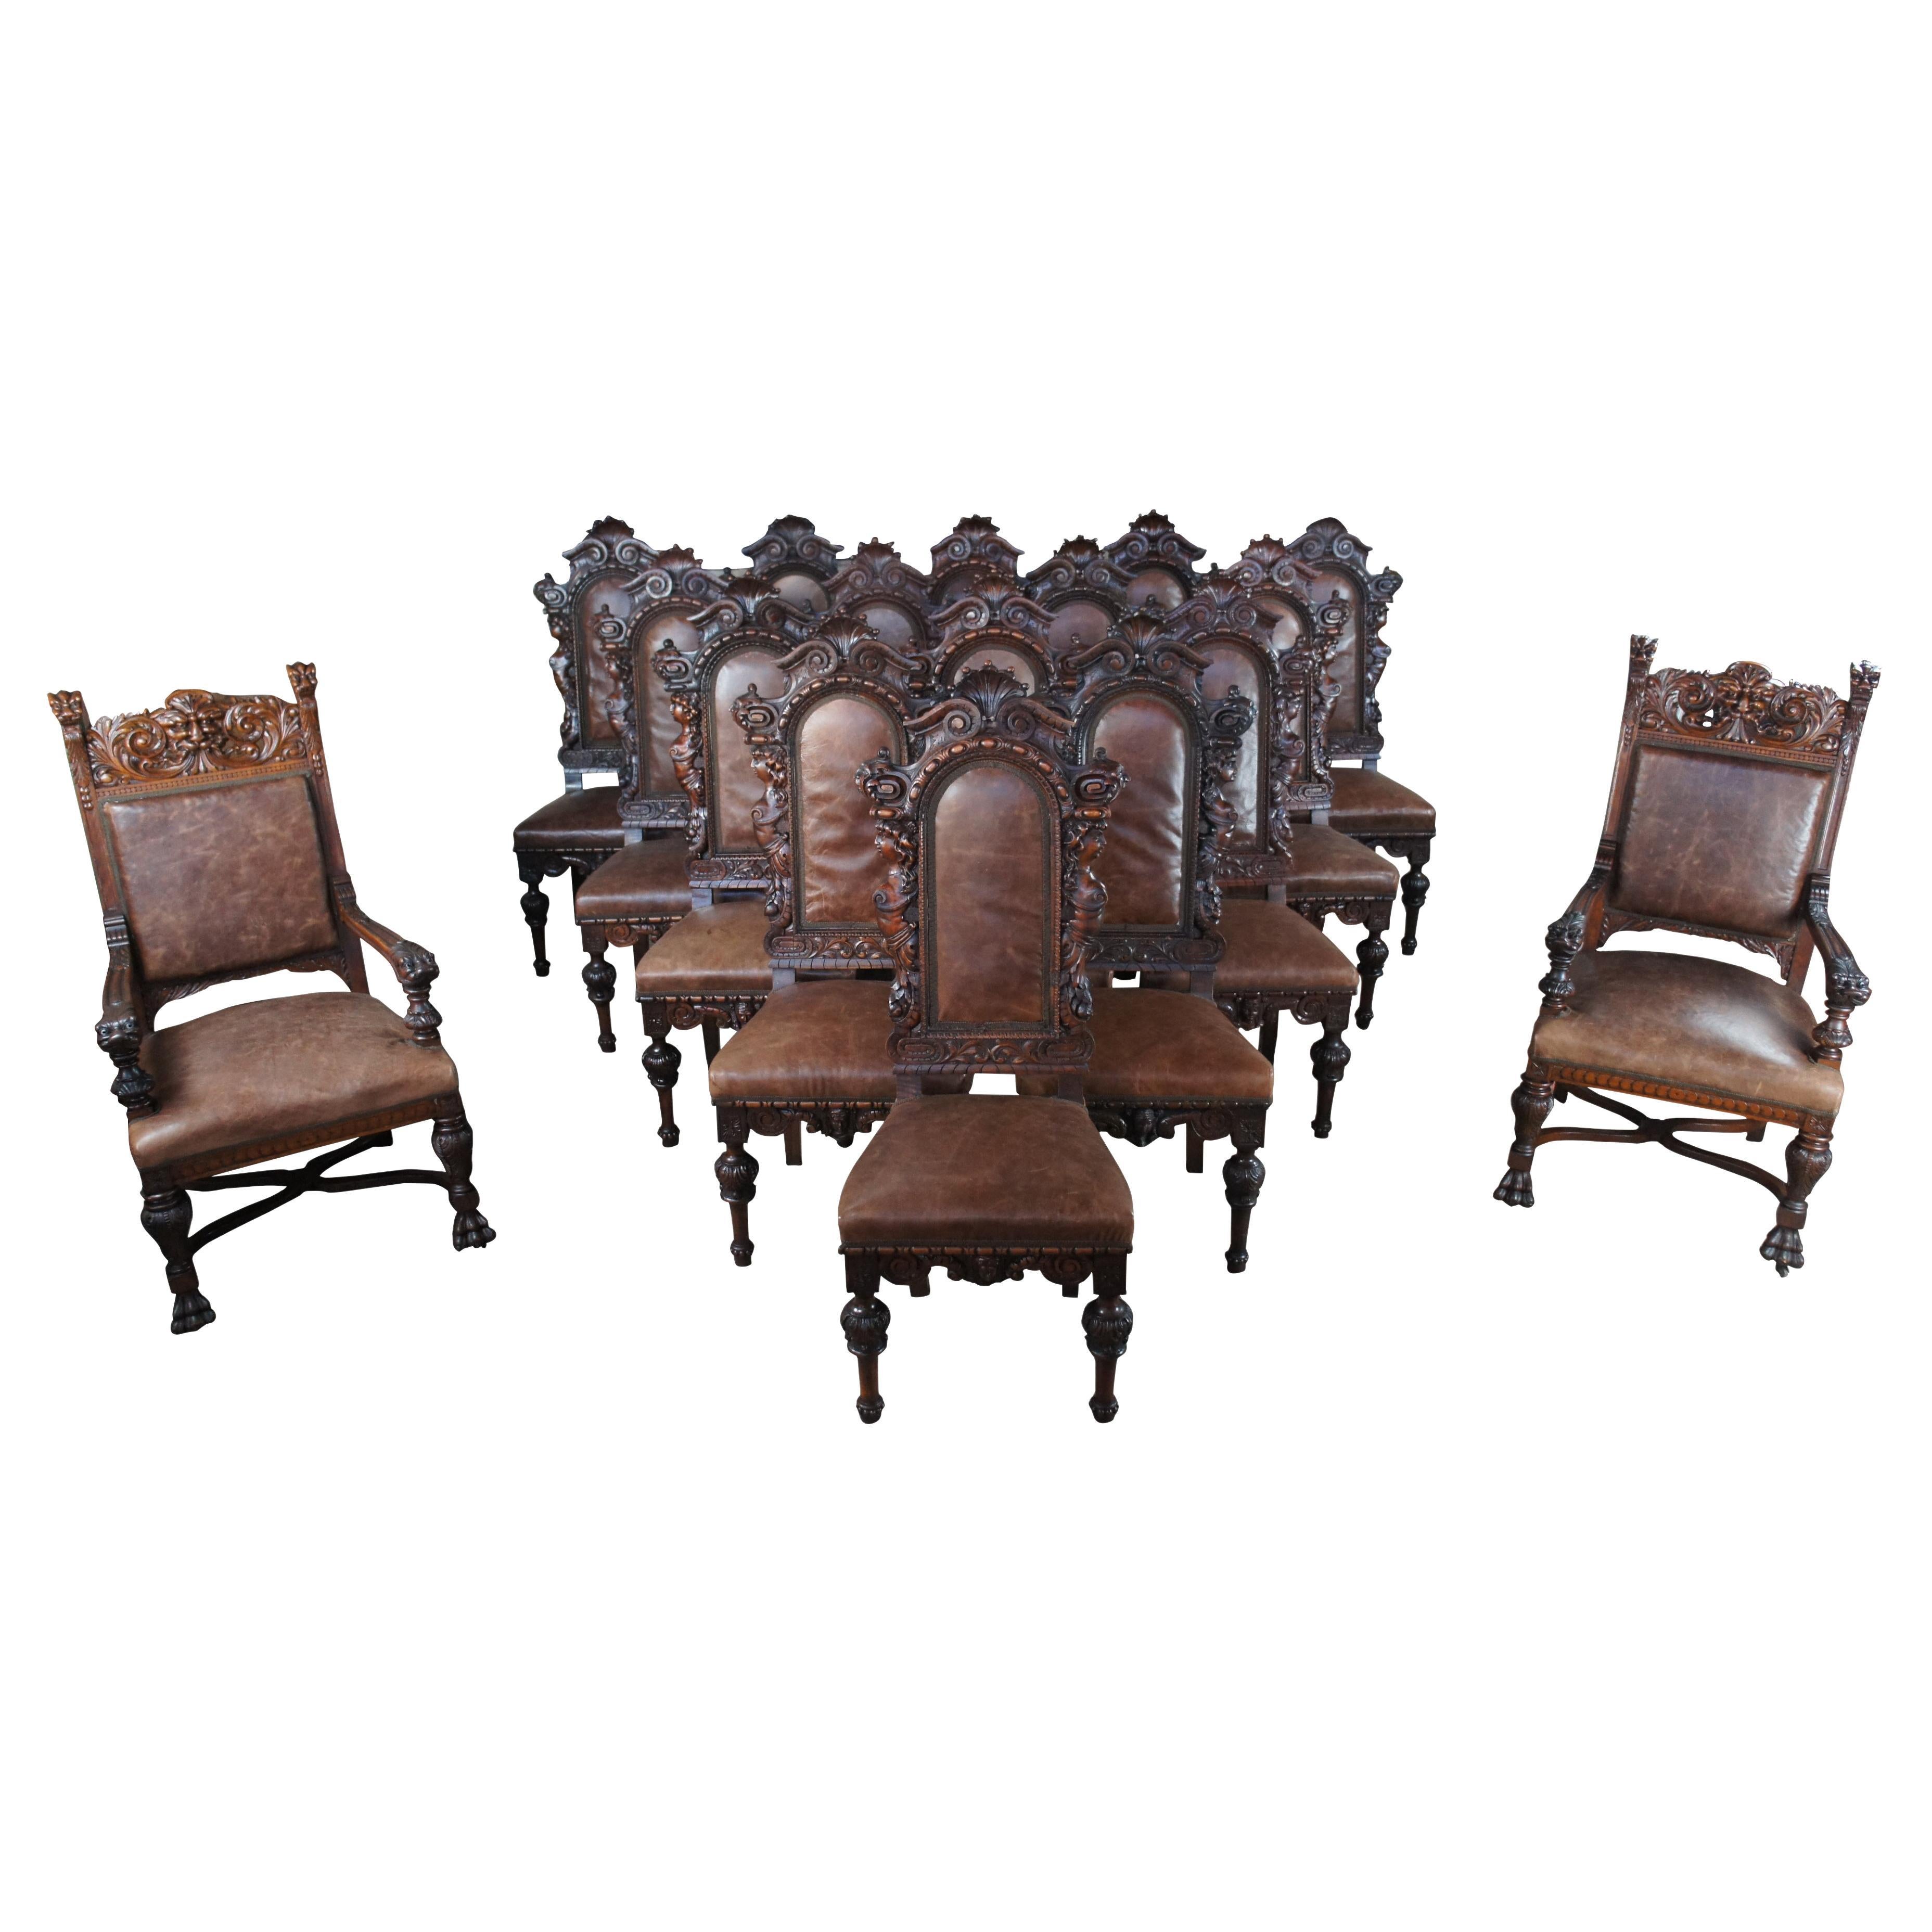 18 monumentales chaises de salle à manger italiennes anciennes de la Renaissance figurative en acajou et cuir